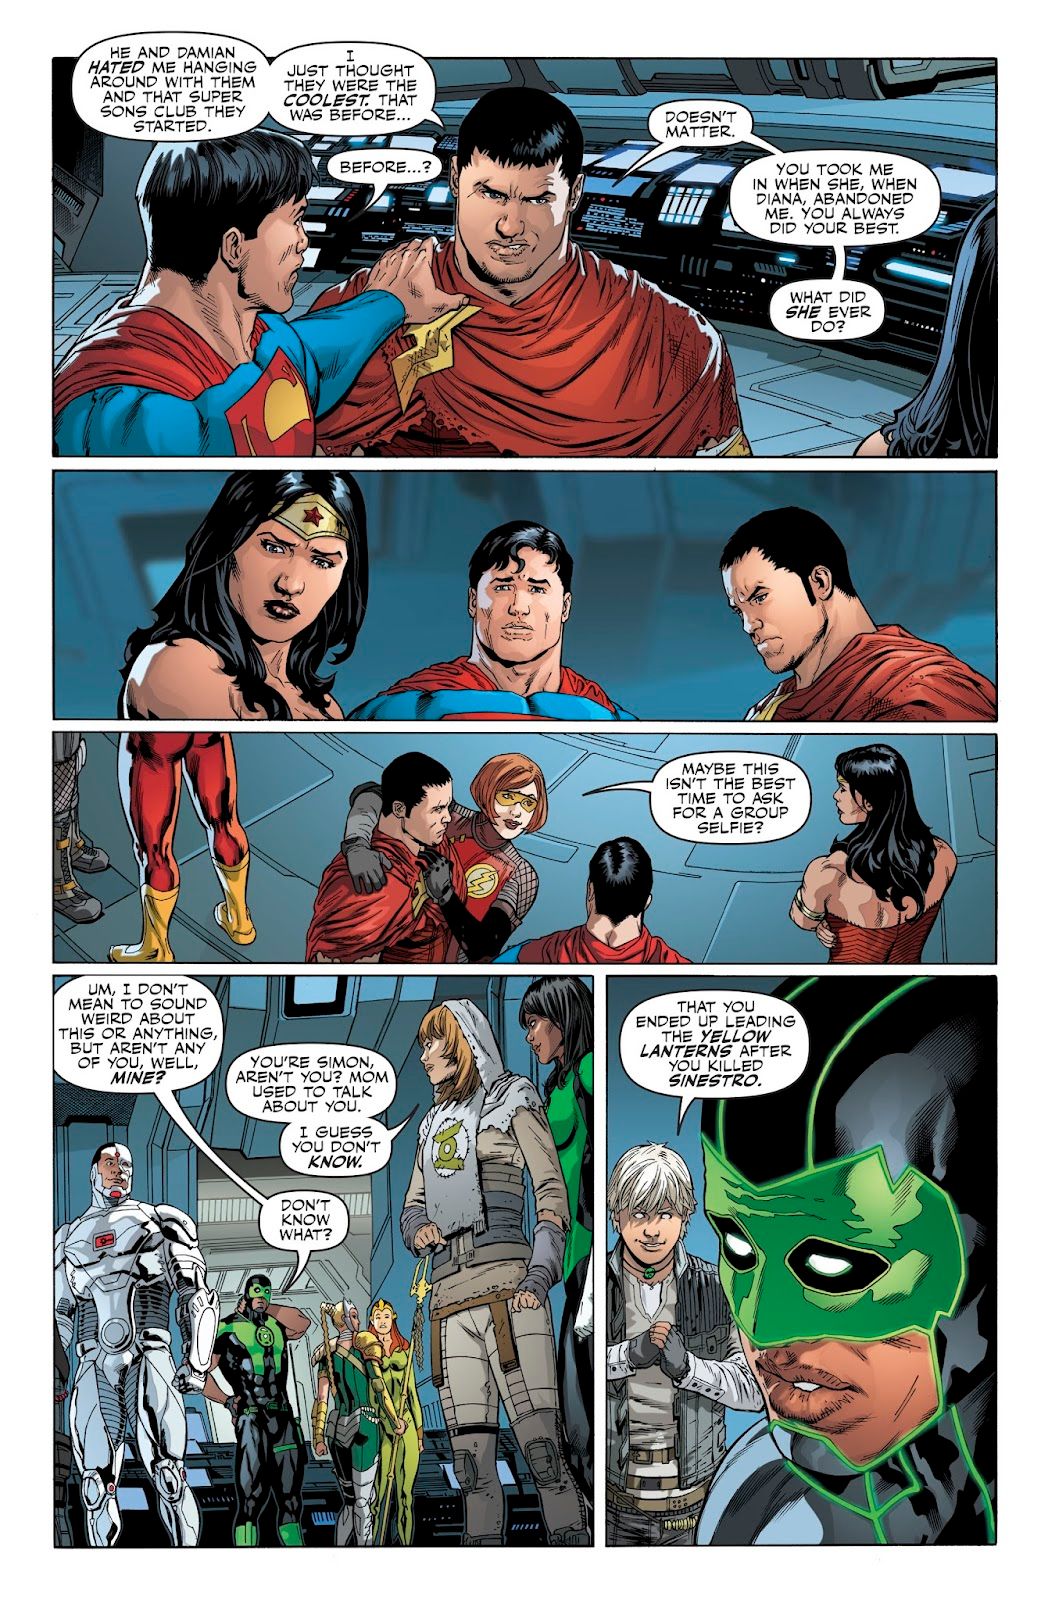 Justice League #27